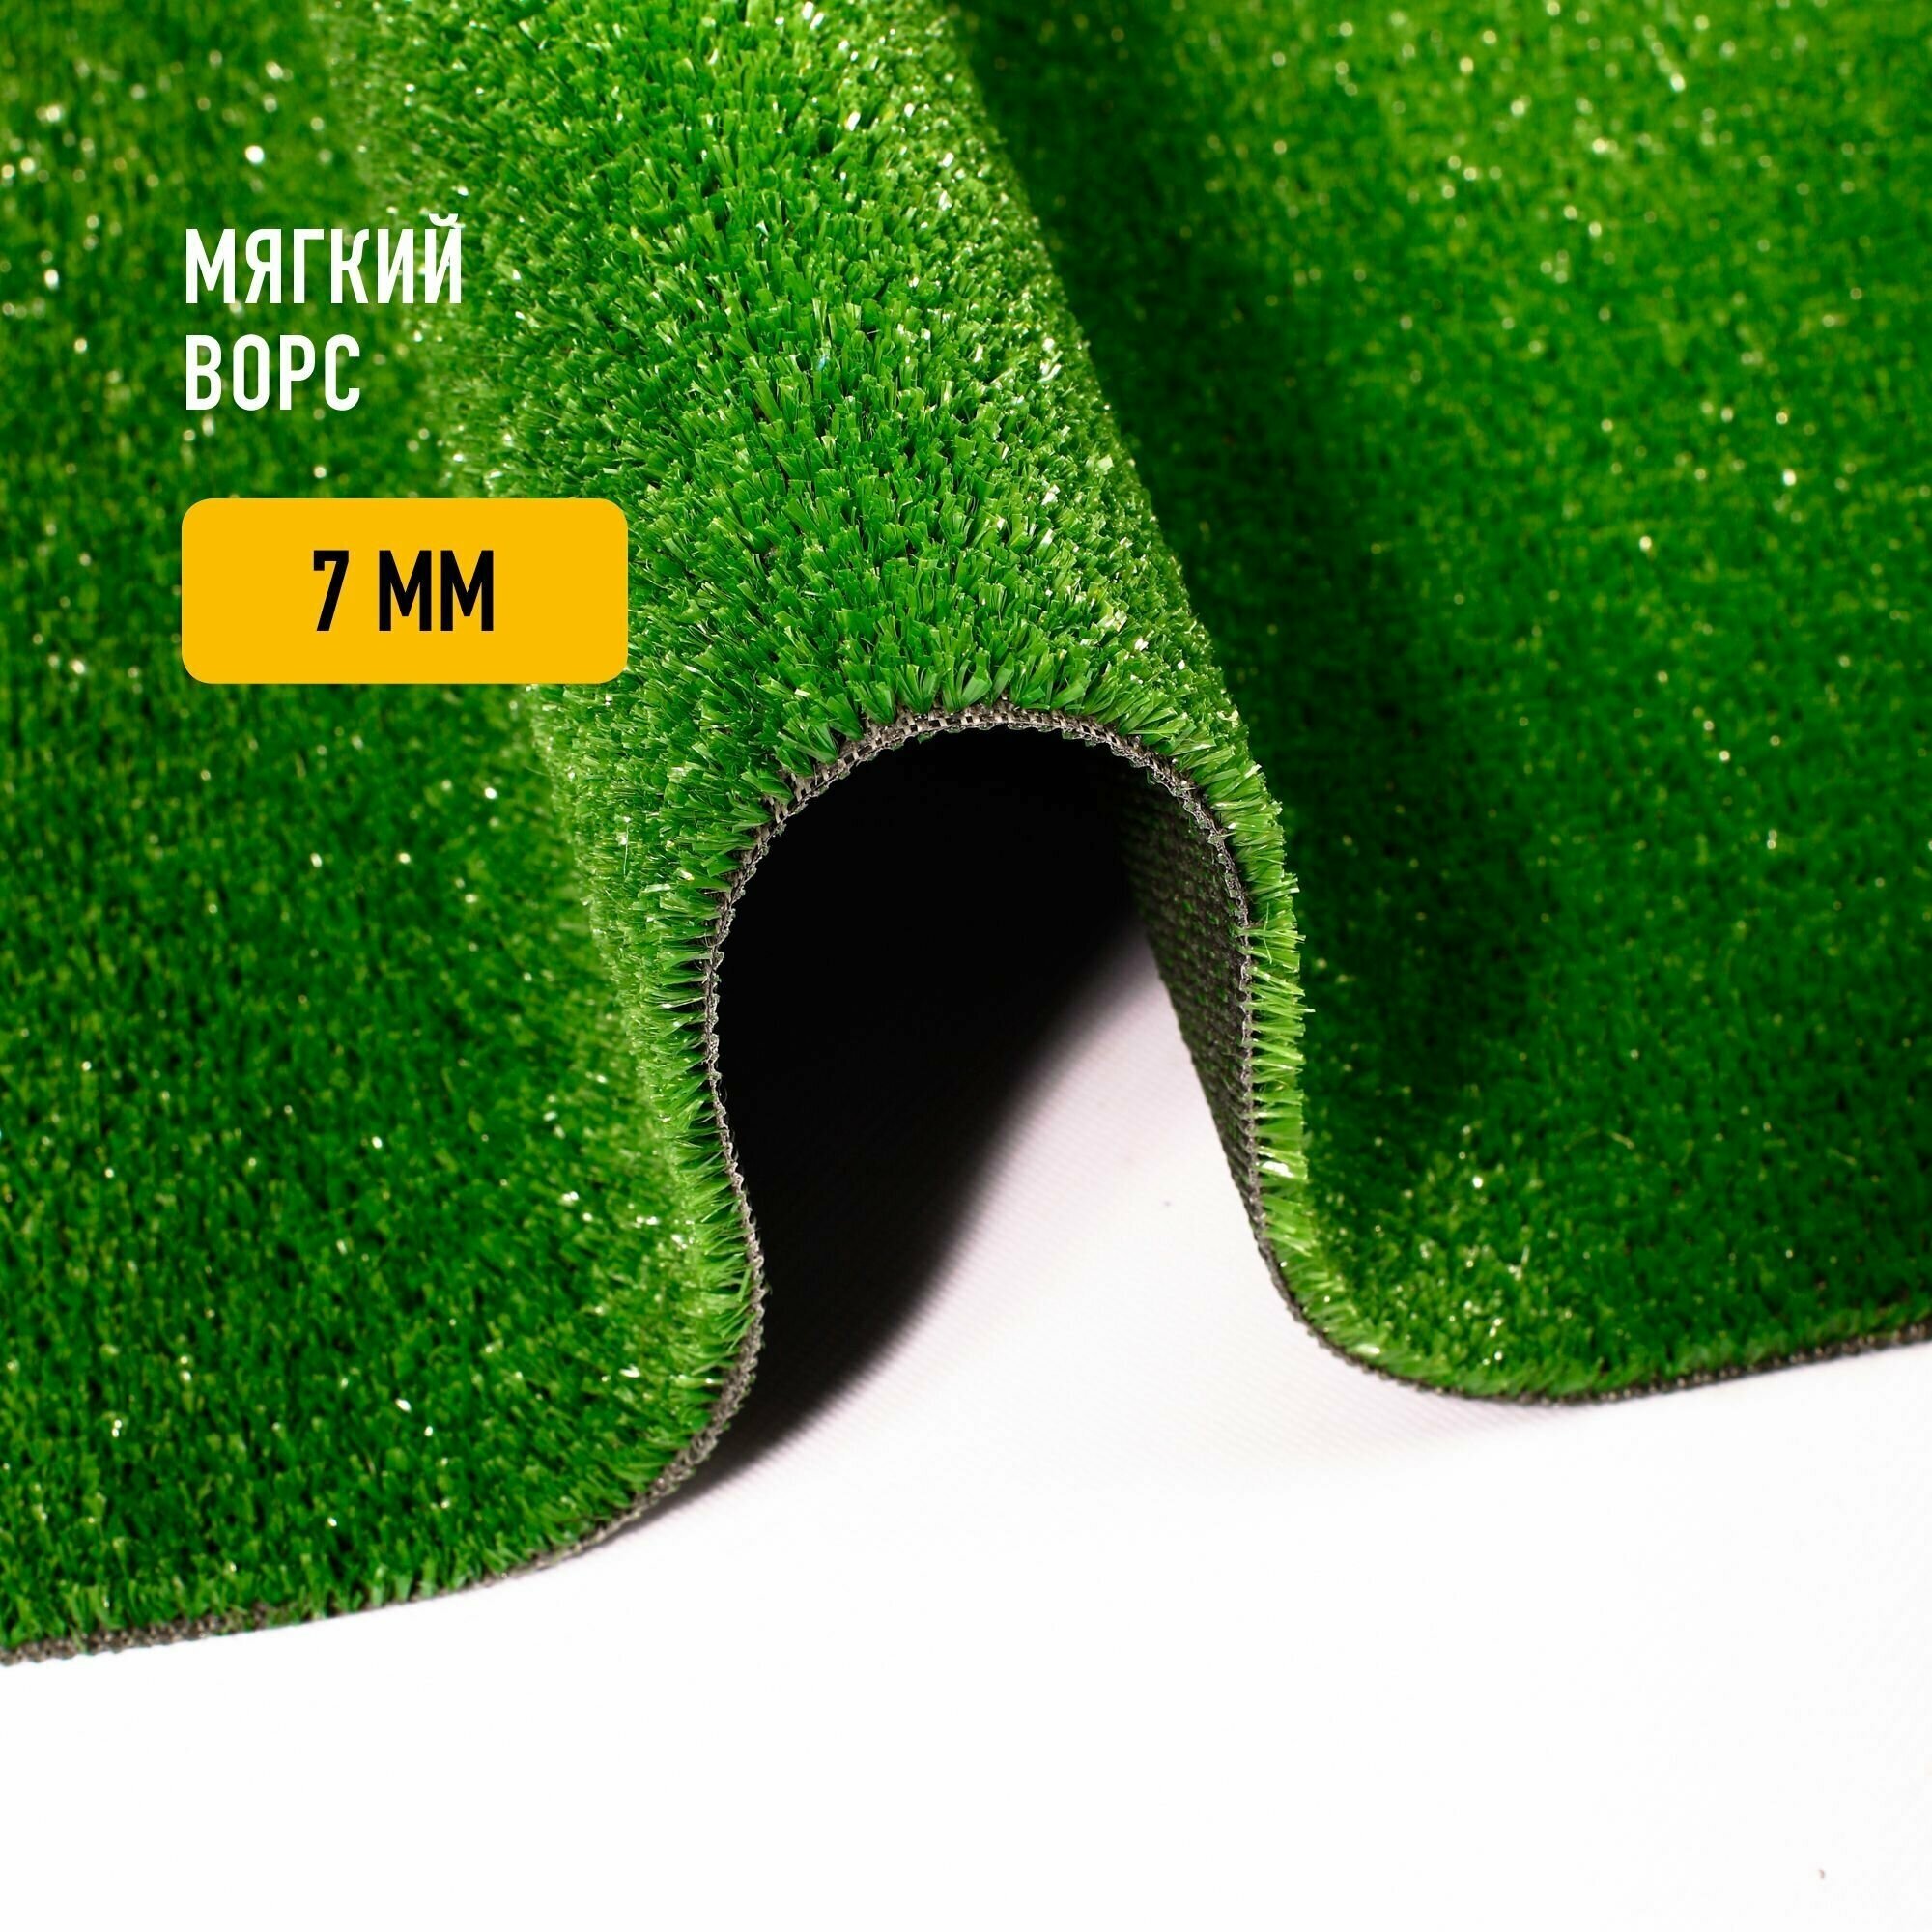 Искусственный газон 2х2,5 м в конверте Premium Grass Nature 7 Green, ворс 7 мм. Искусственная трава. 4786393-2х2,5